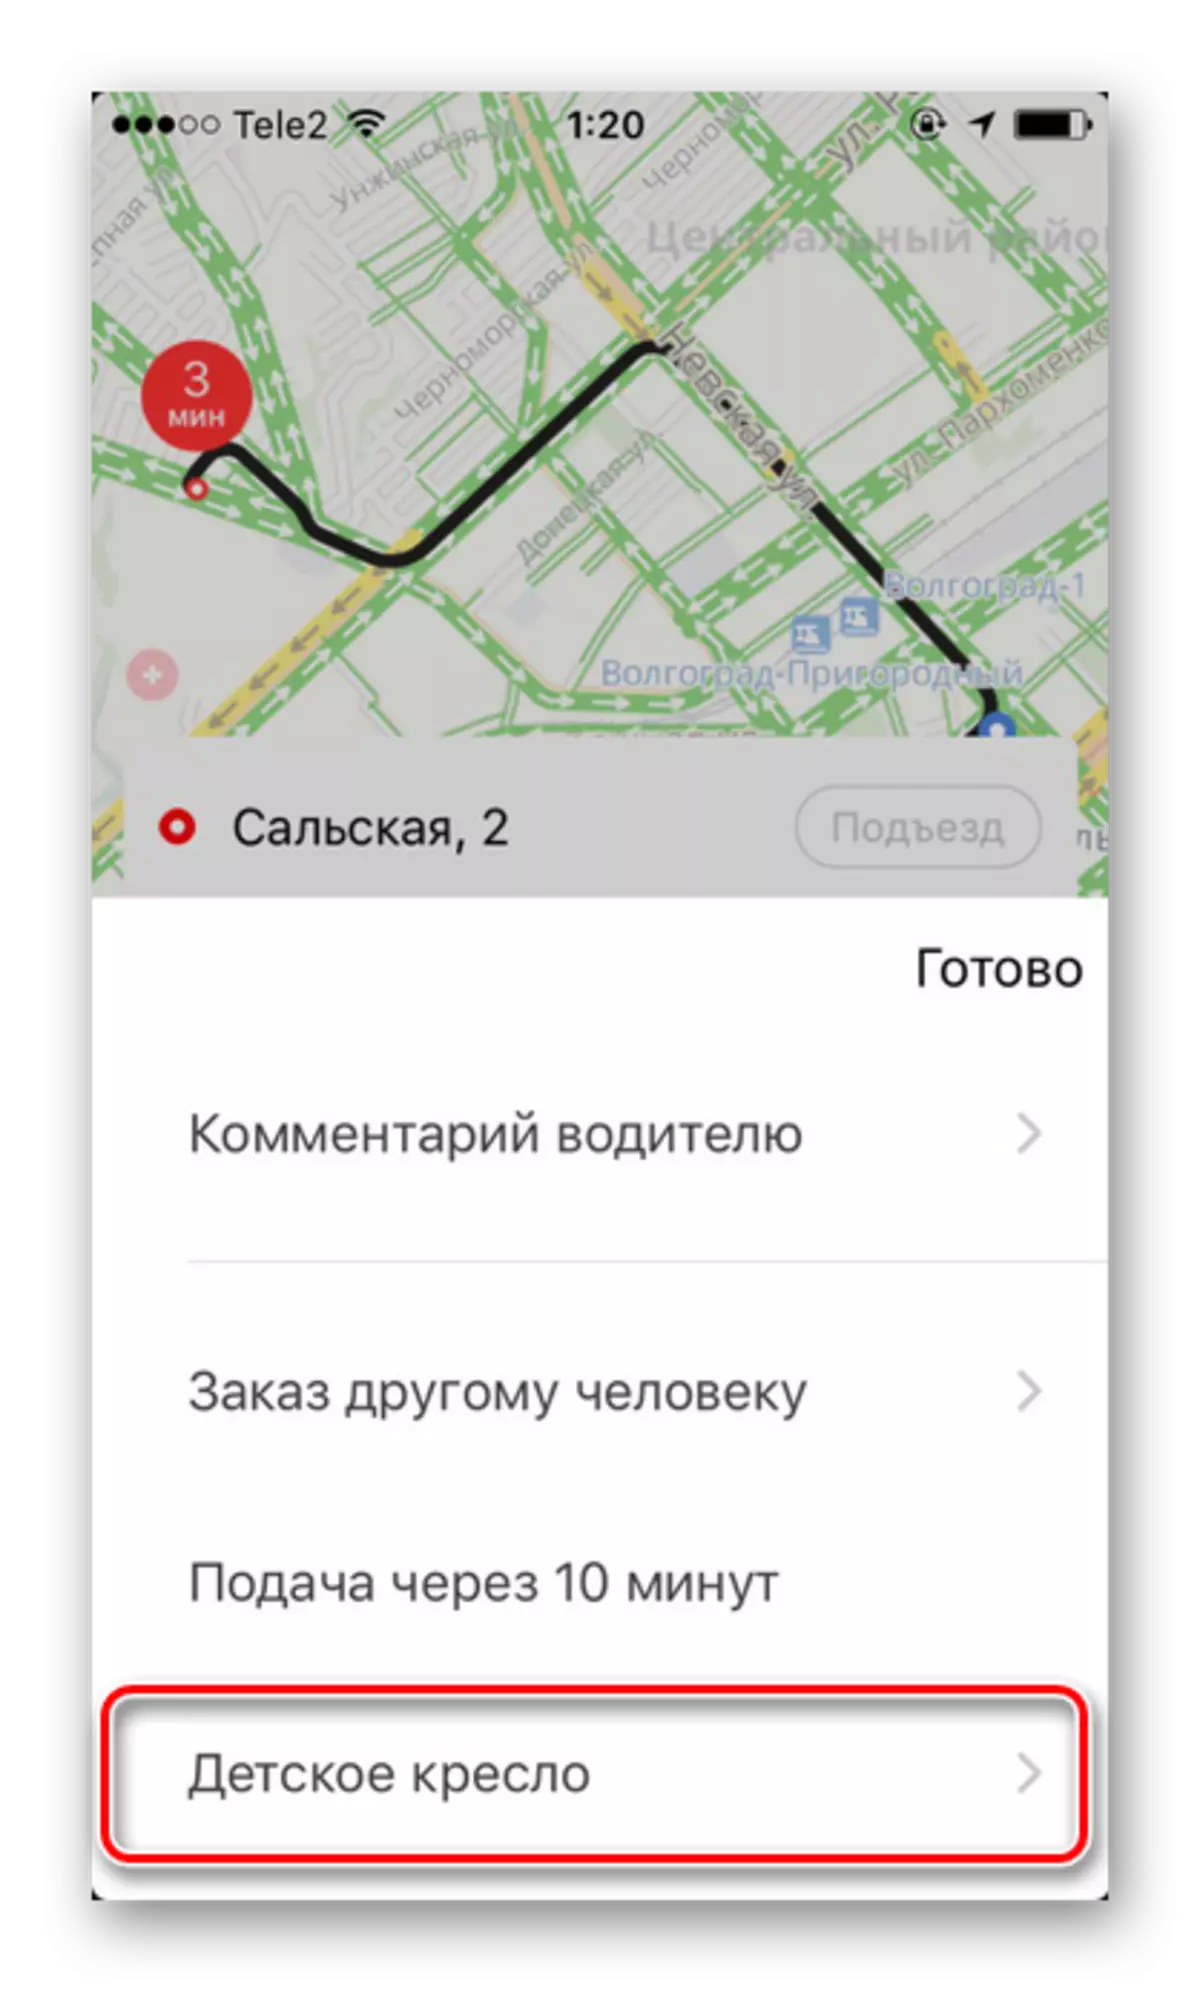 További szolgáltatás a Yandex.taxi gyermekszékének rendelkezésére